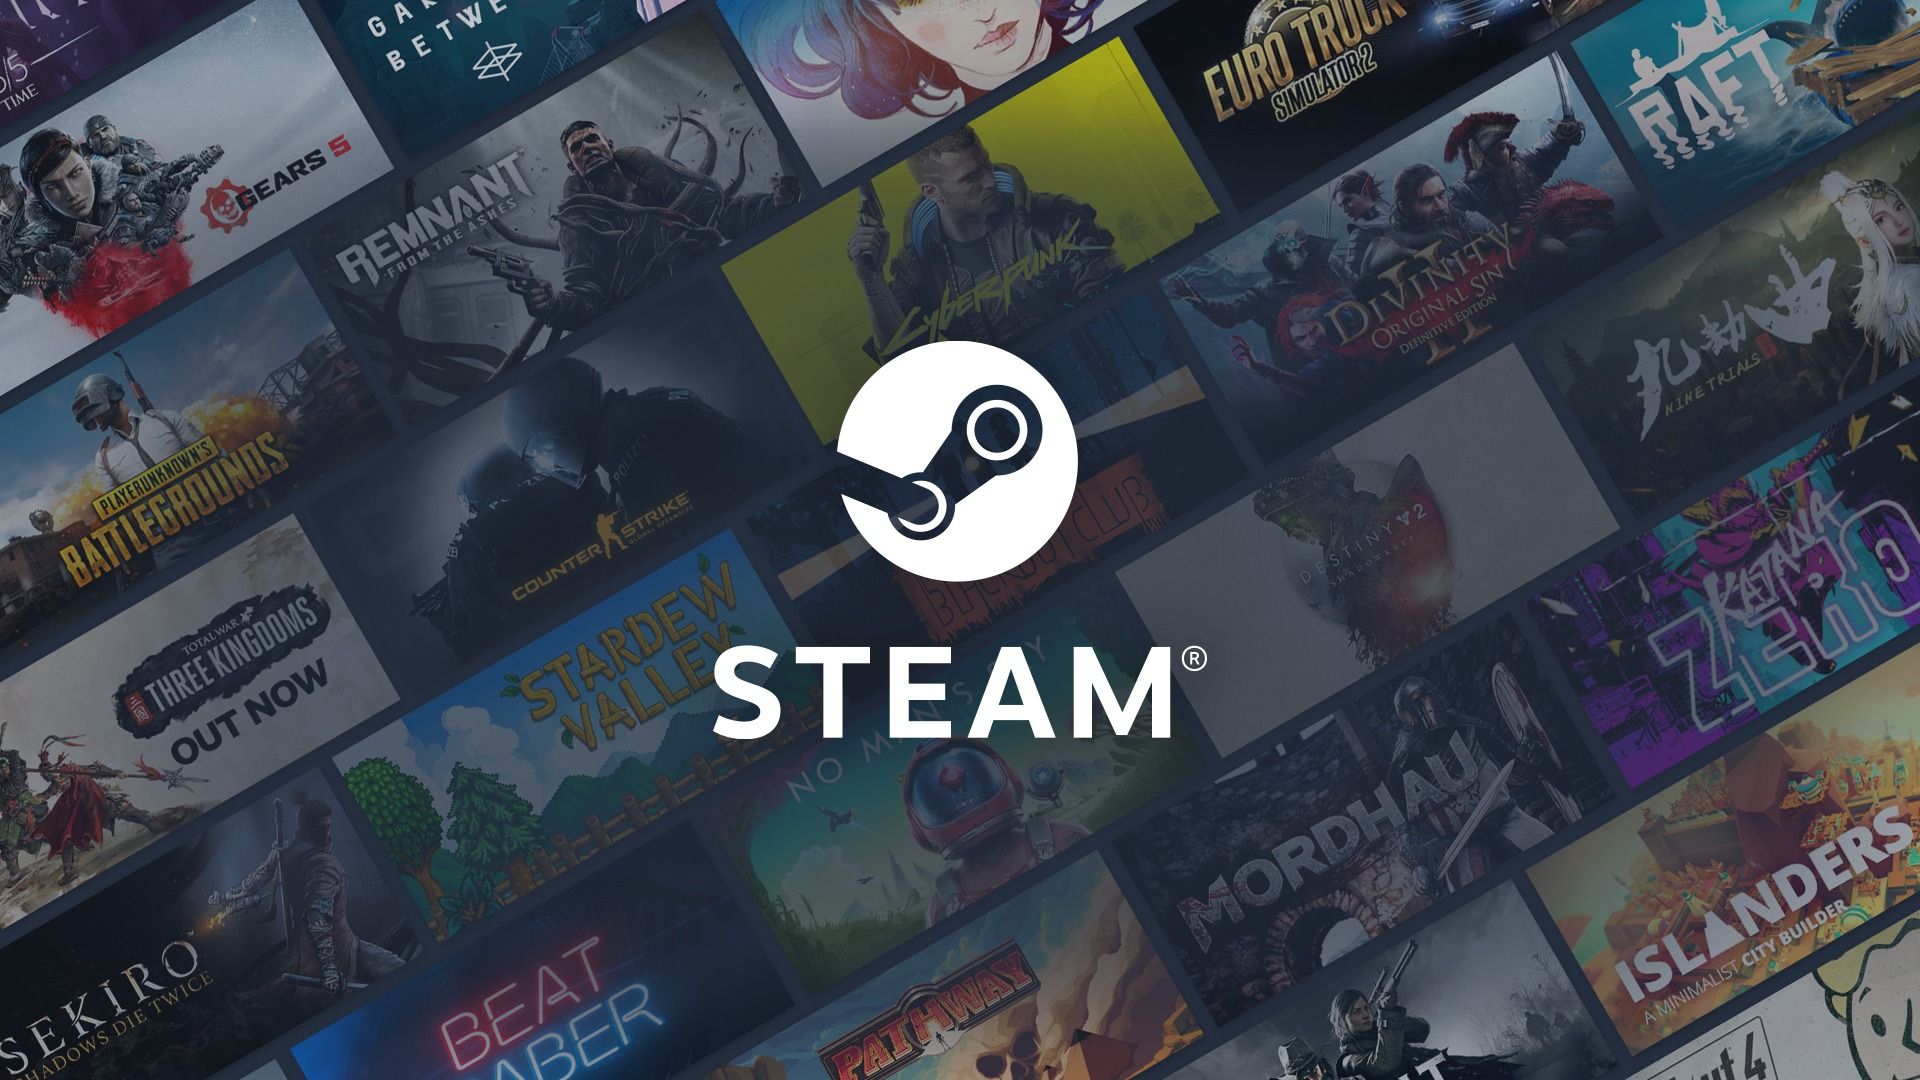 Ujawniono datę letniej wyprzedaży Steam 2022, a gracze mają teraz wyraźną wskazówkę, kiedy rozpocznie się następna wyprzedaż na PC i Steam Deck.